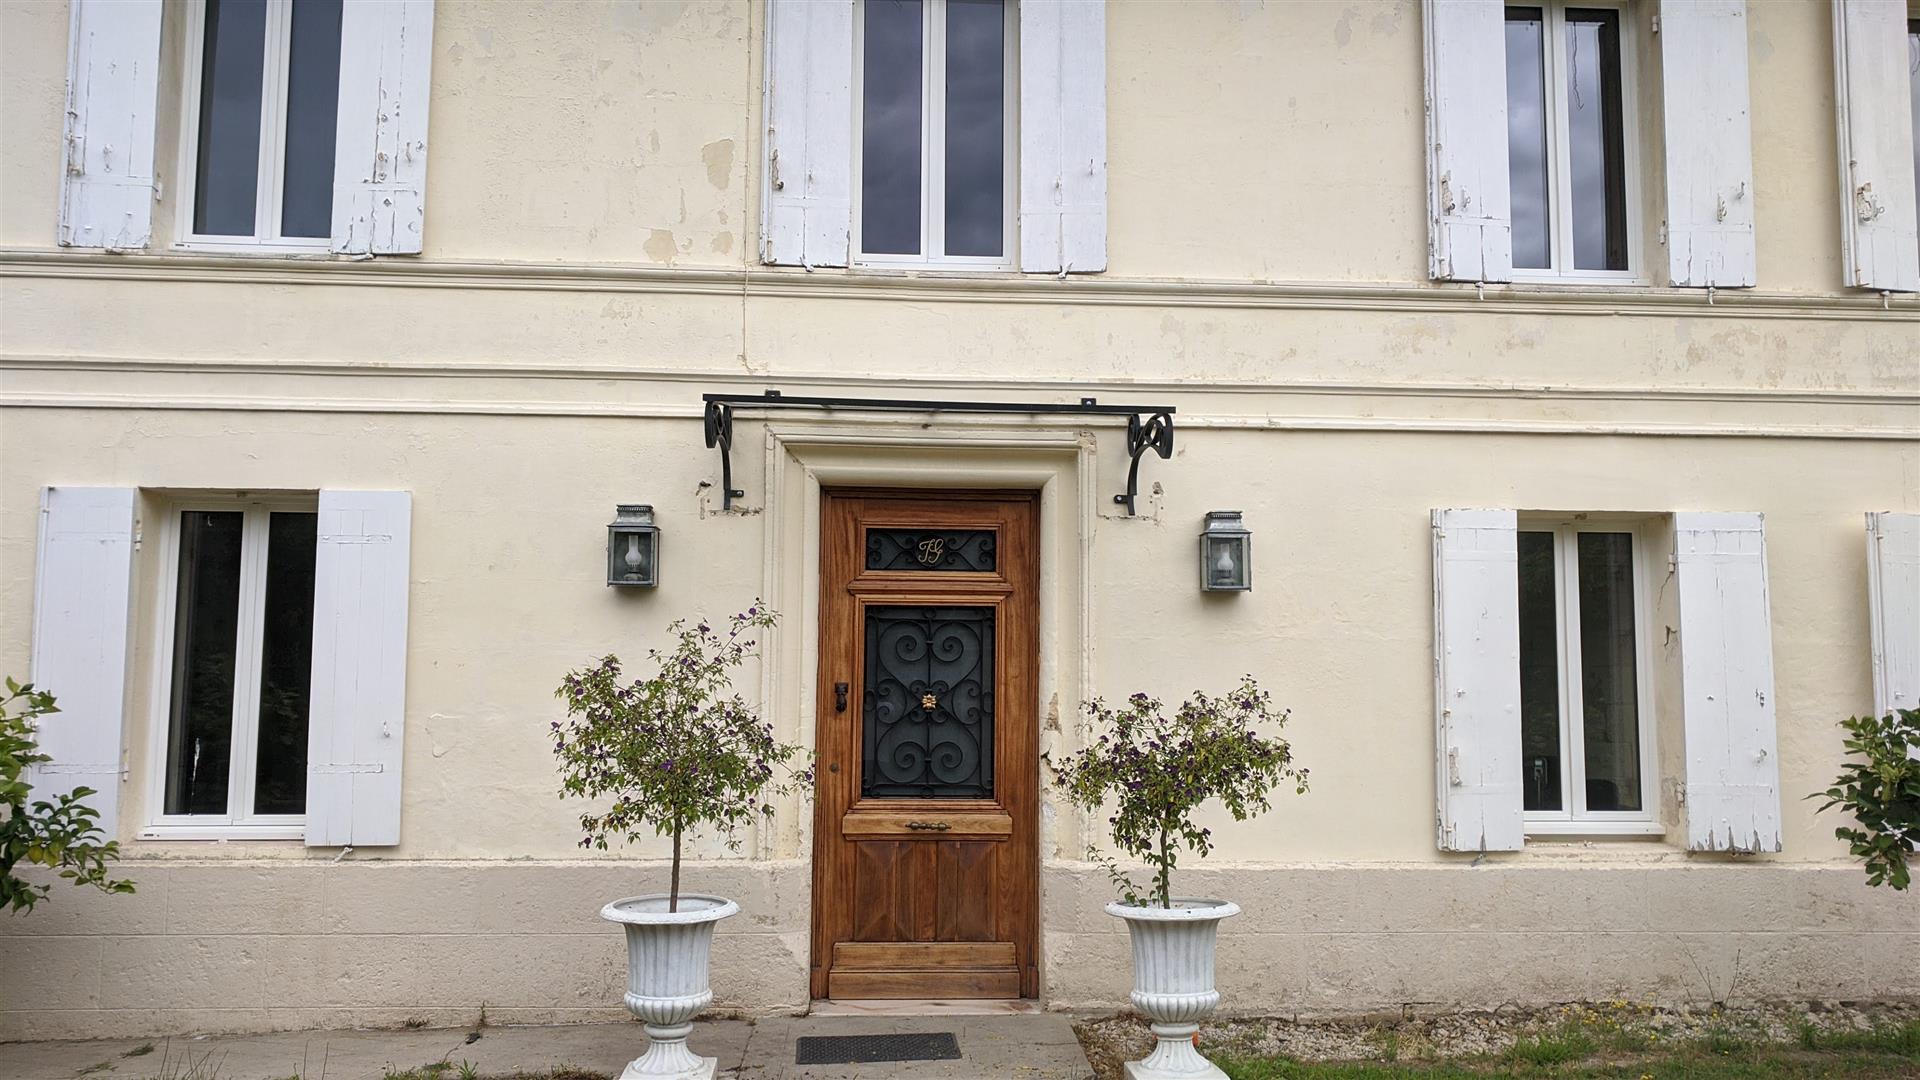 Una rara oportunidad de comprar una gran casa de campo de piedra en Saint-André-de-Cubzac, a 20 km 